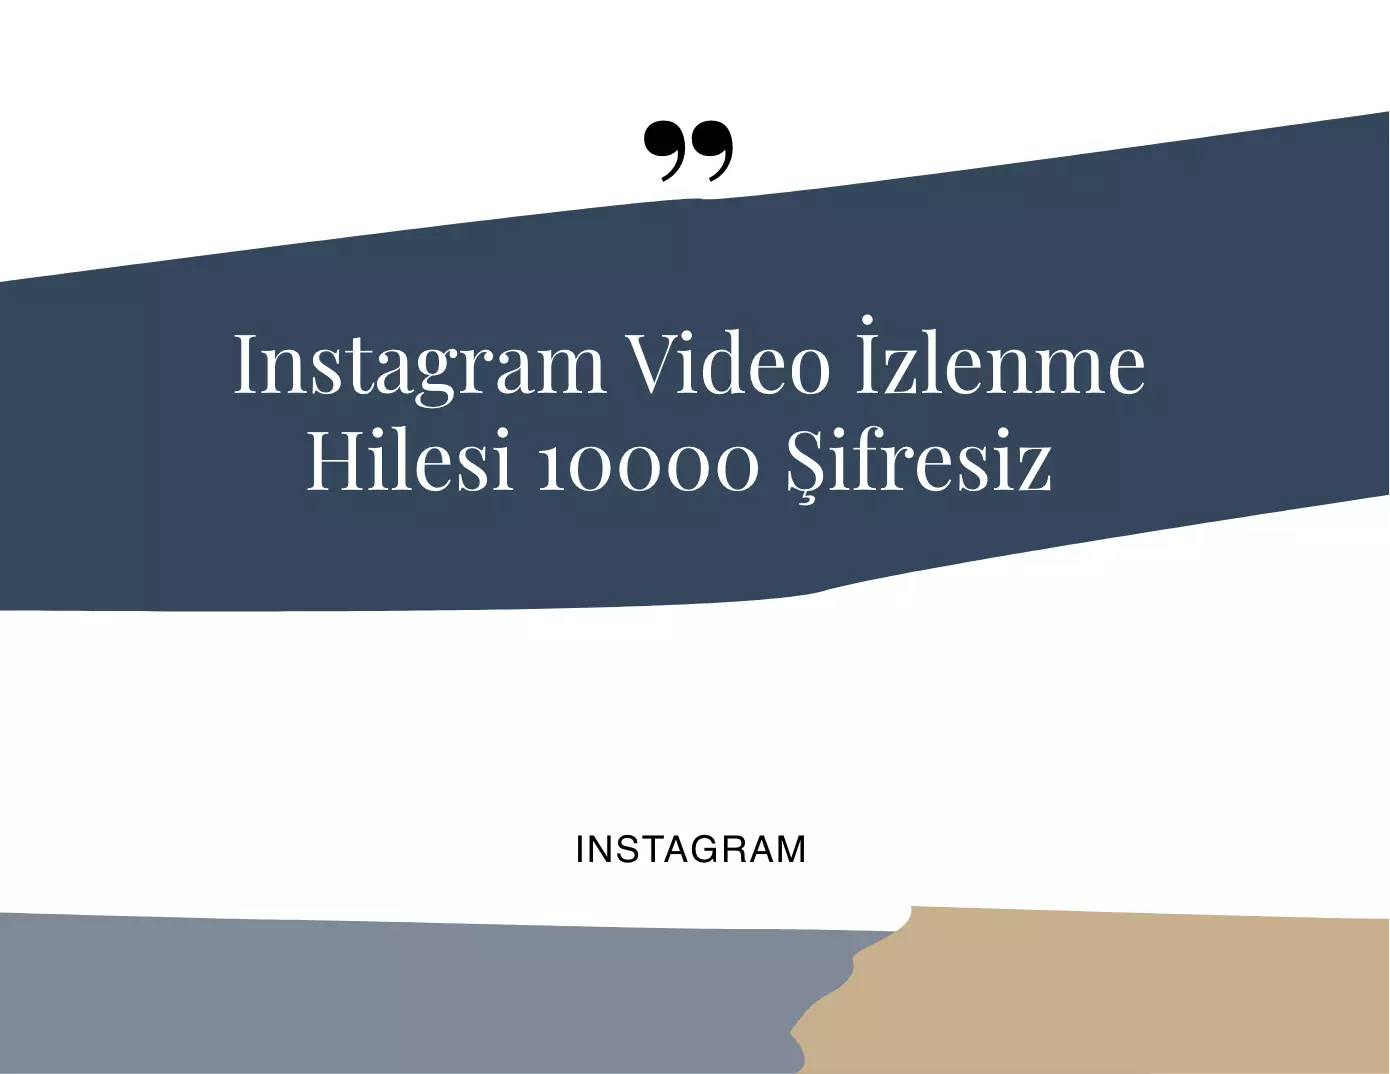 Instagram Video İzlenme Hilesi 10000 Şifresiz